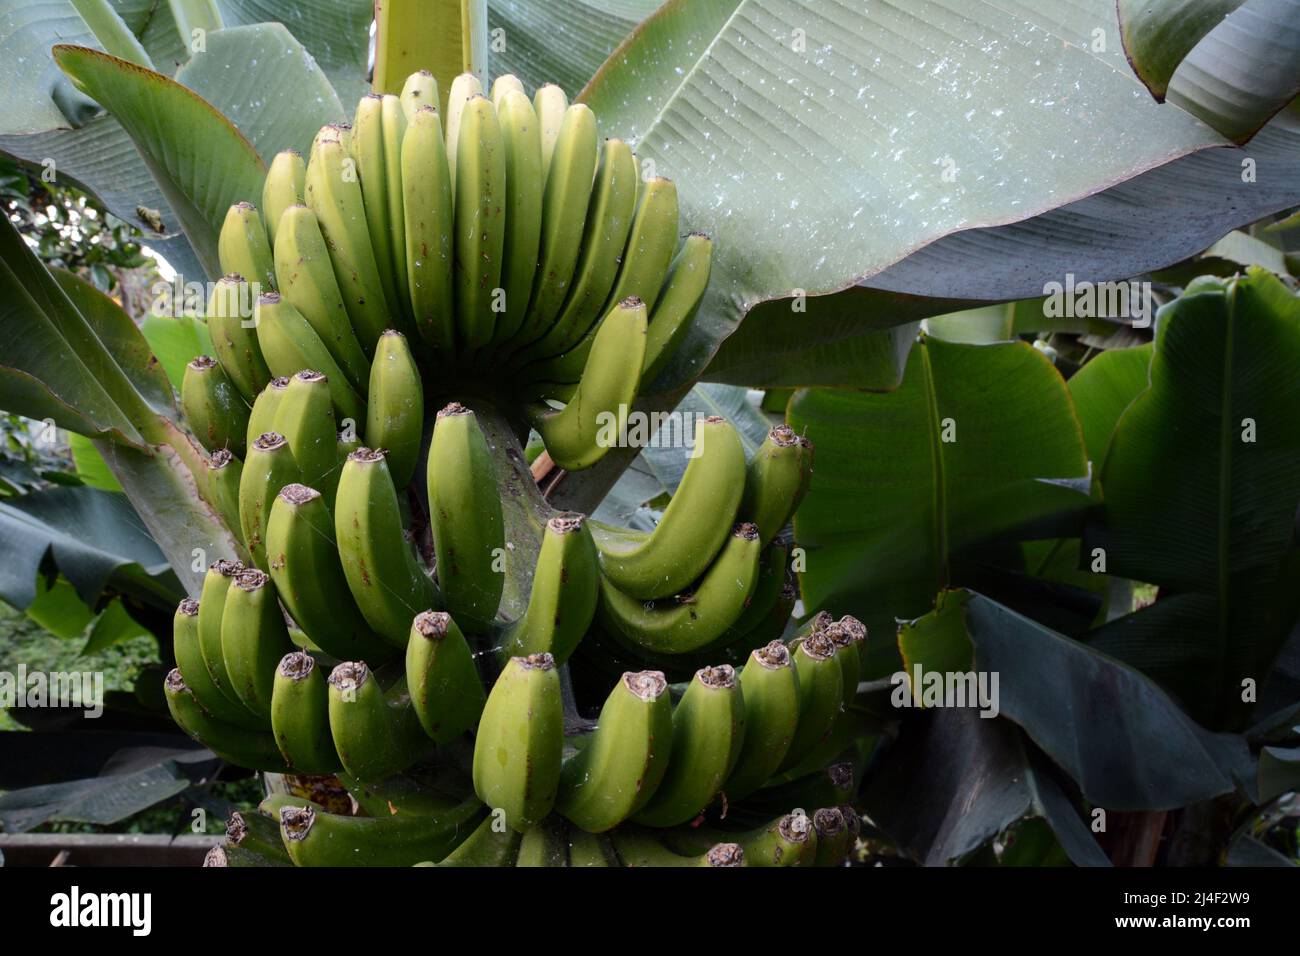 Un manojo de plátanos canarios inmaduros que crecen sobre árboles en una finca, o finca, en la zona de Los Realejos, en la isla de Tenerife, Islas Canarias, España. Foto de stock